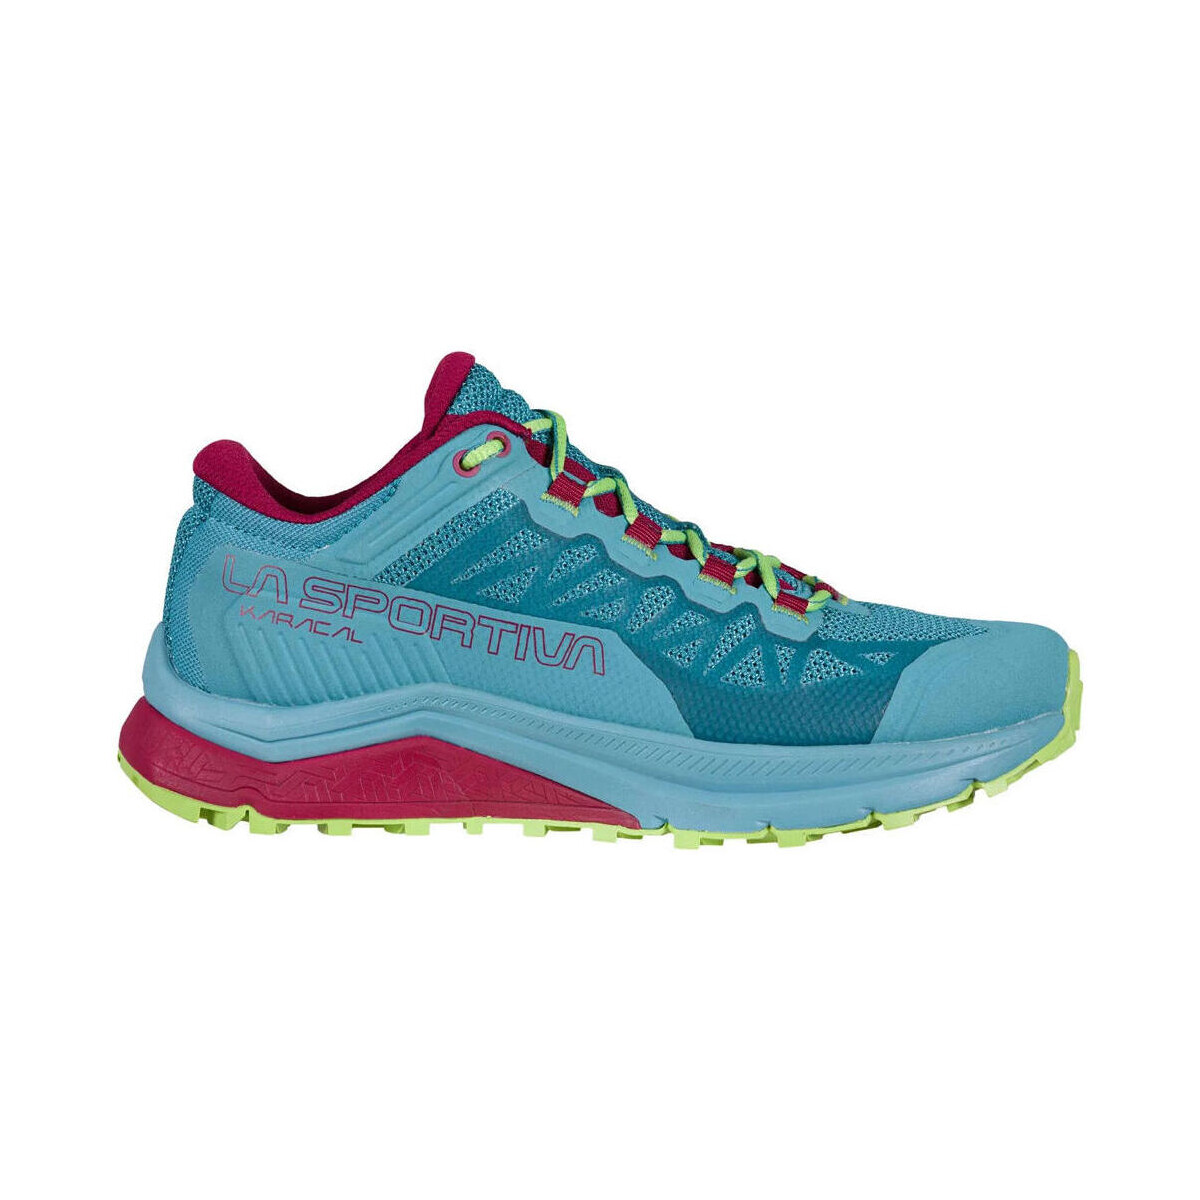 Chaussures Femme ASICS Sou Marathon Running Shoes Sneakers 1191A151-100 Karacal Woman Bleu